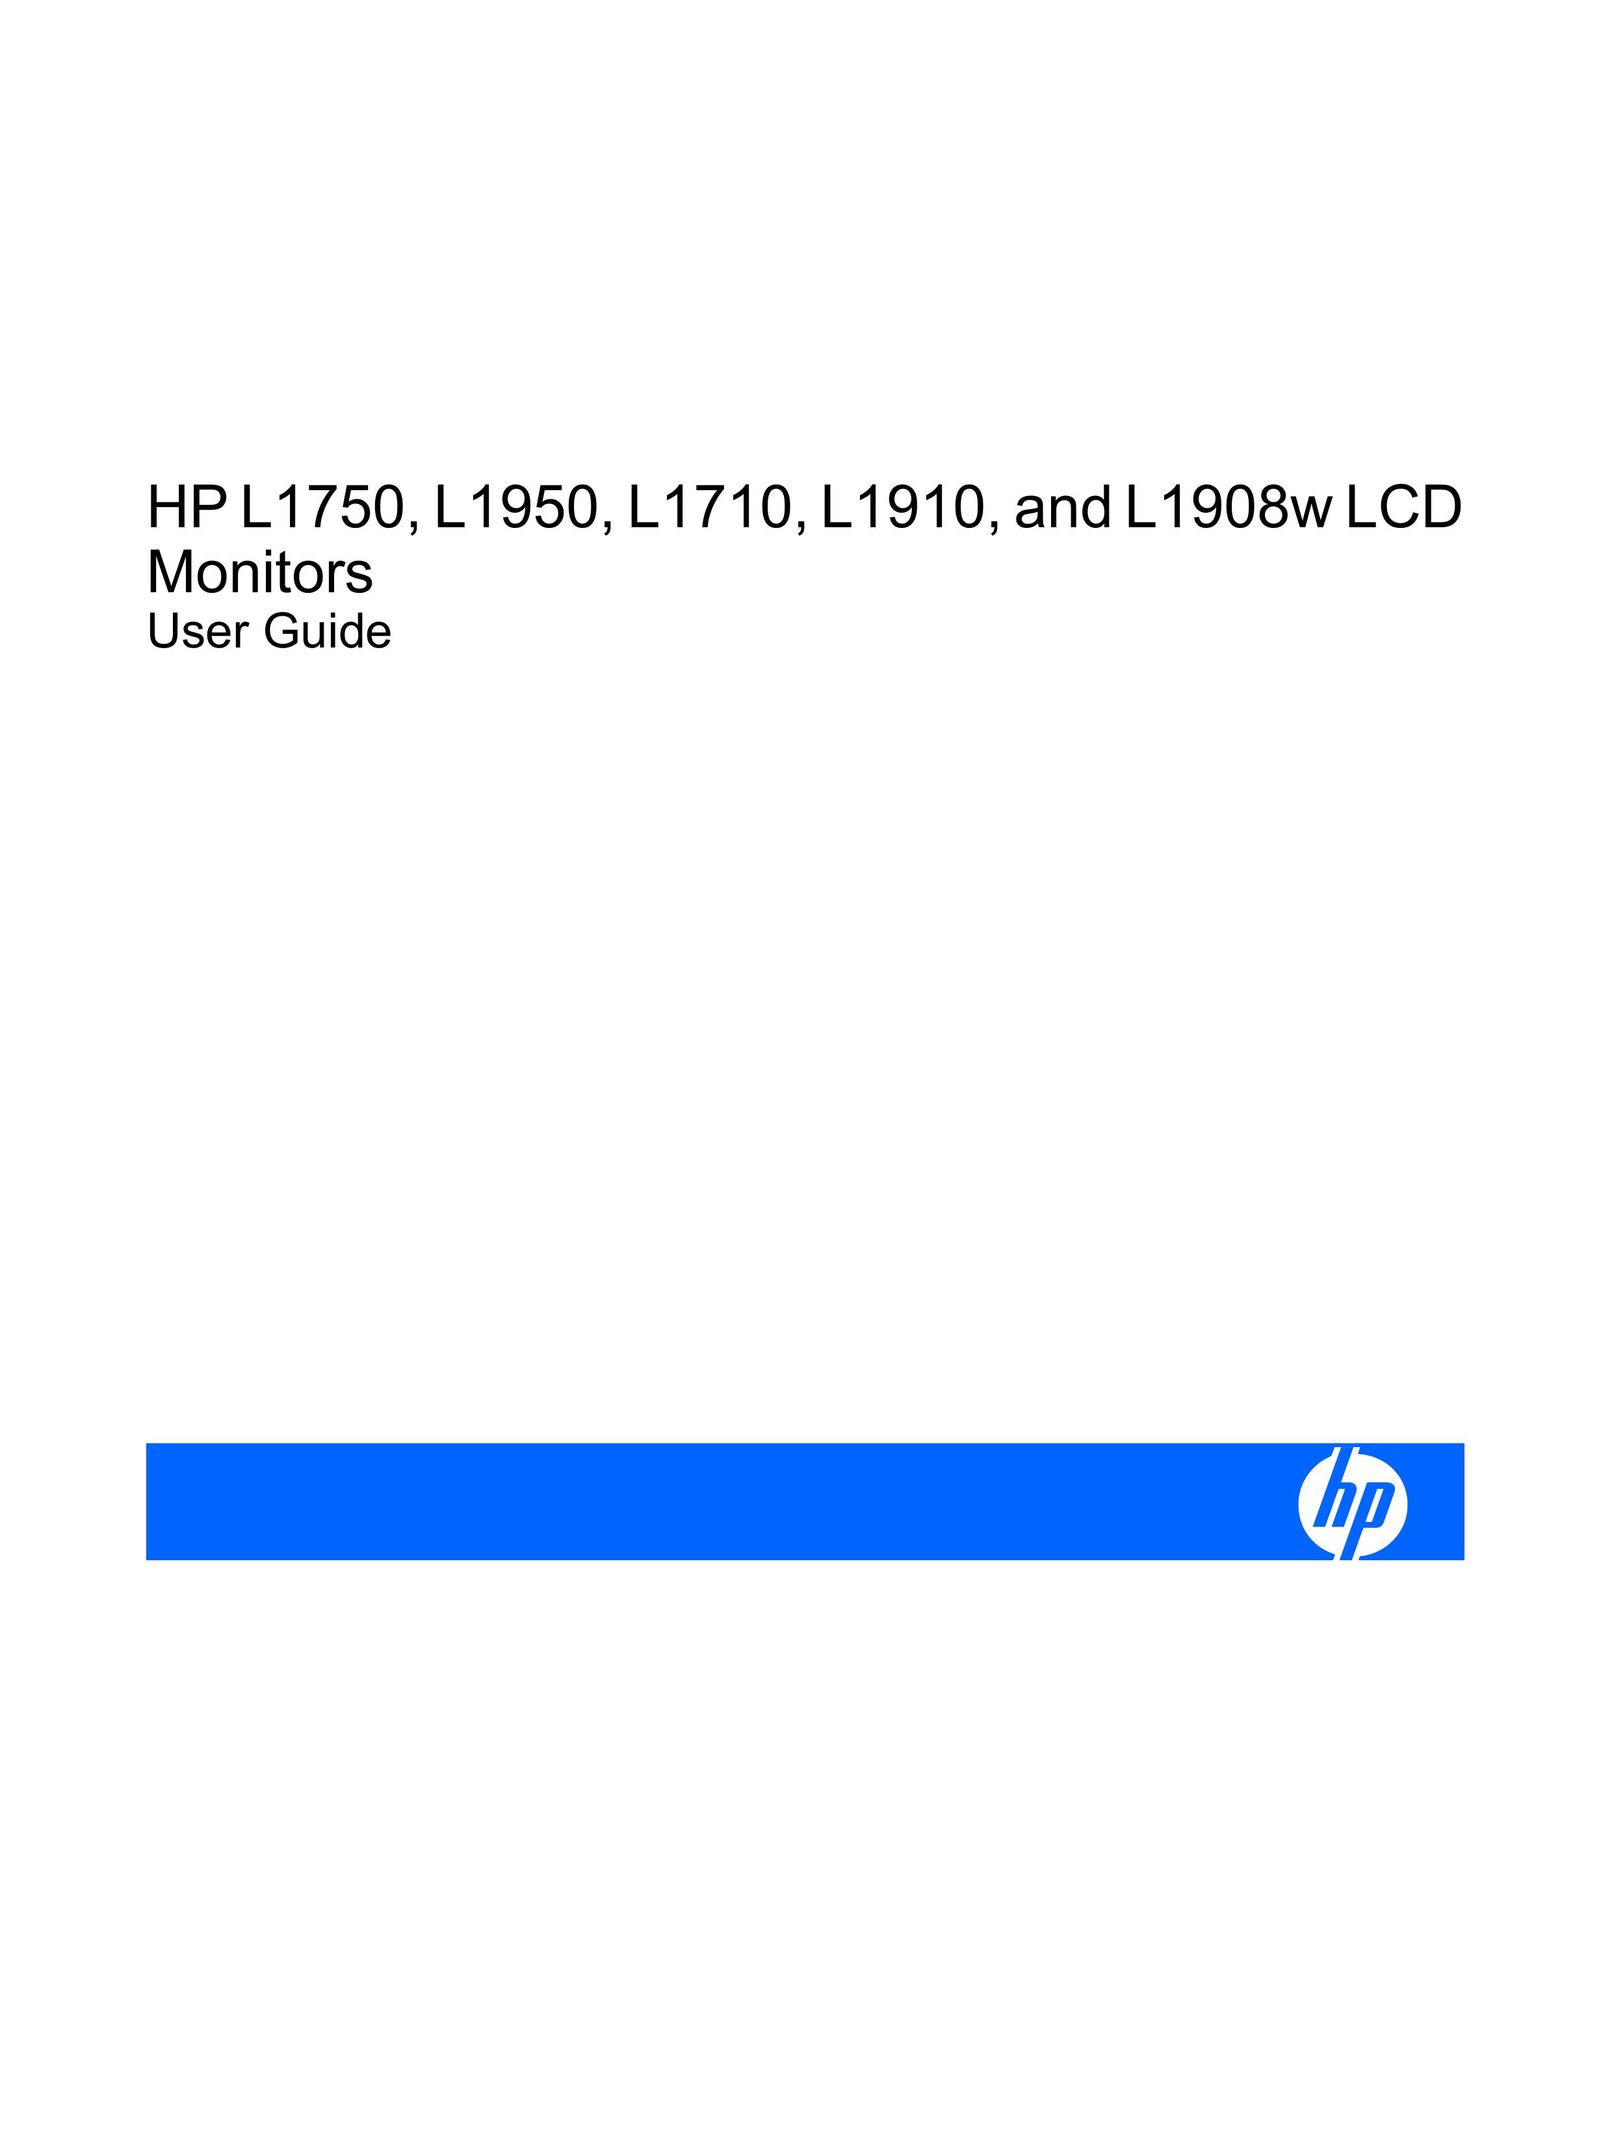 HP (Hewlett-Packard) L1908w Car Video System User Manual